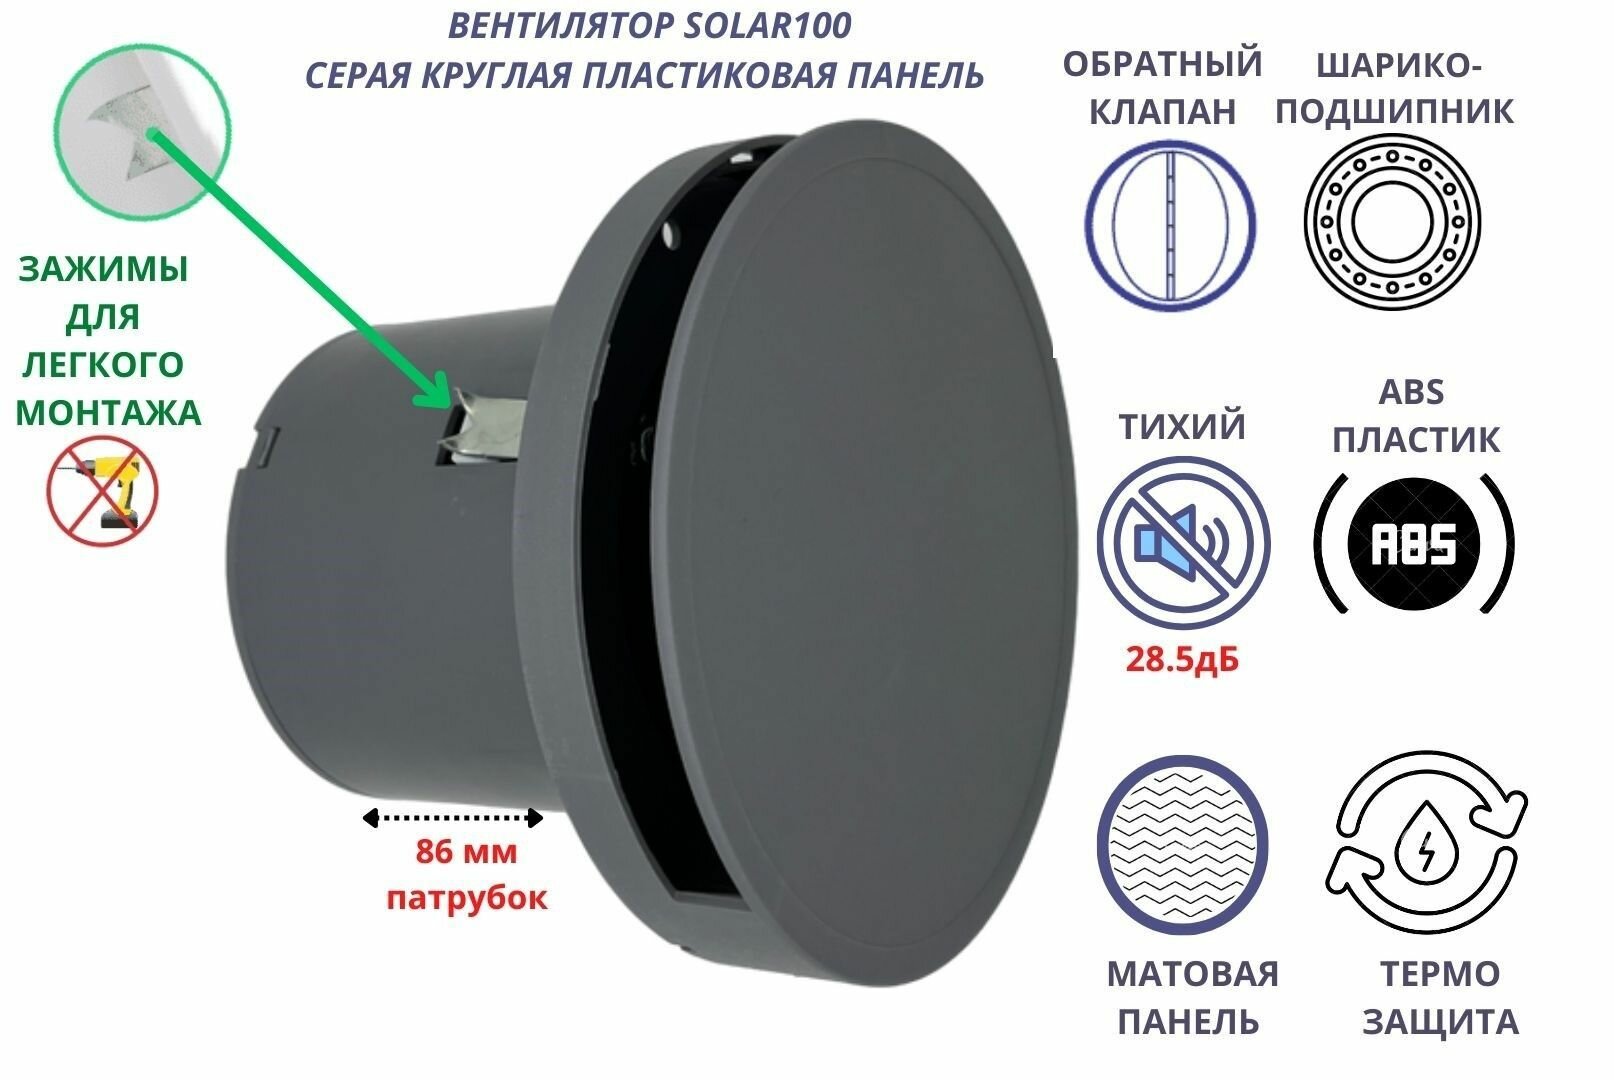 Круглый вентилятор D100мм, малошумный (28,5дБ), с обратным клапаном и креплением без сверления VENTFAN Solar100, серый матовый, Сербия - фотография № 1